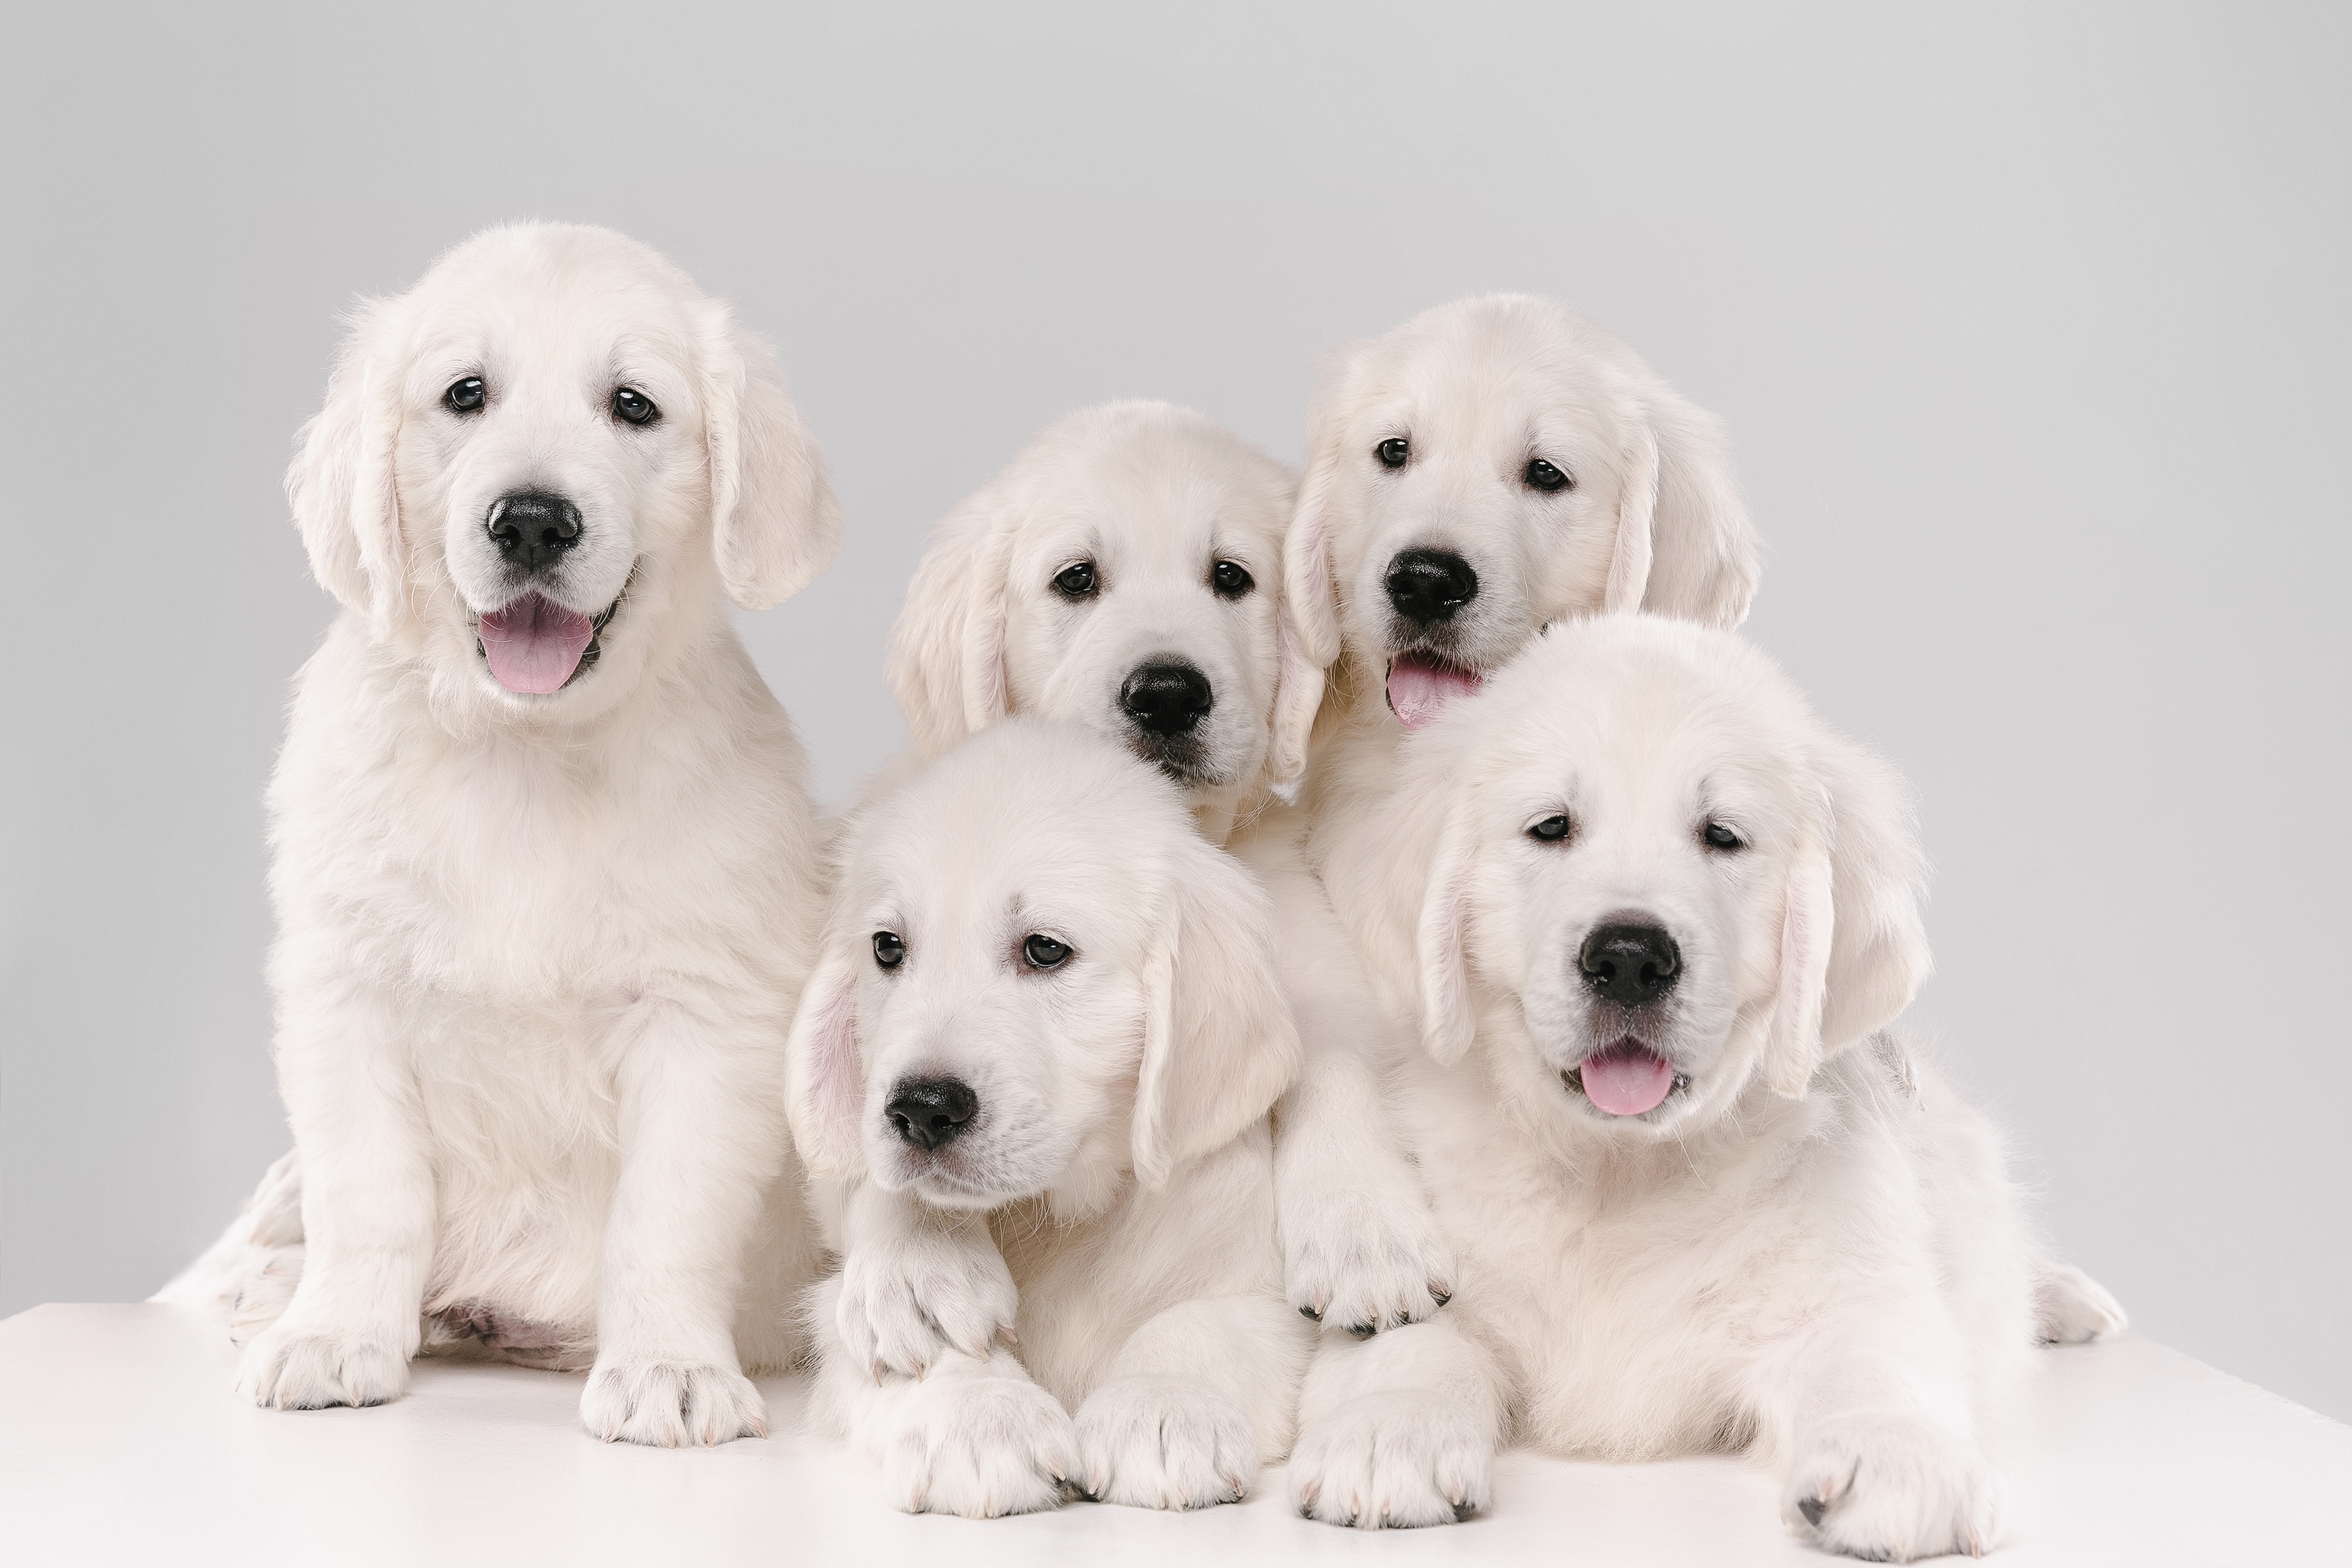 Wallpapers animal puppies golden retriever on the desktop